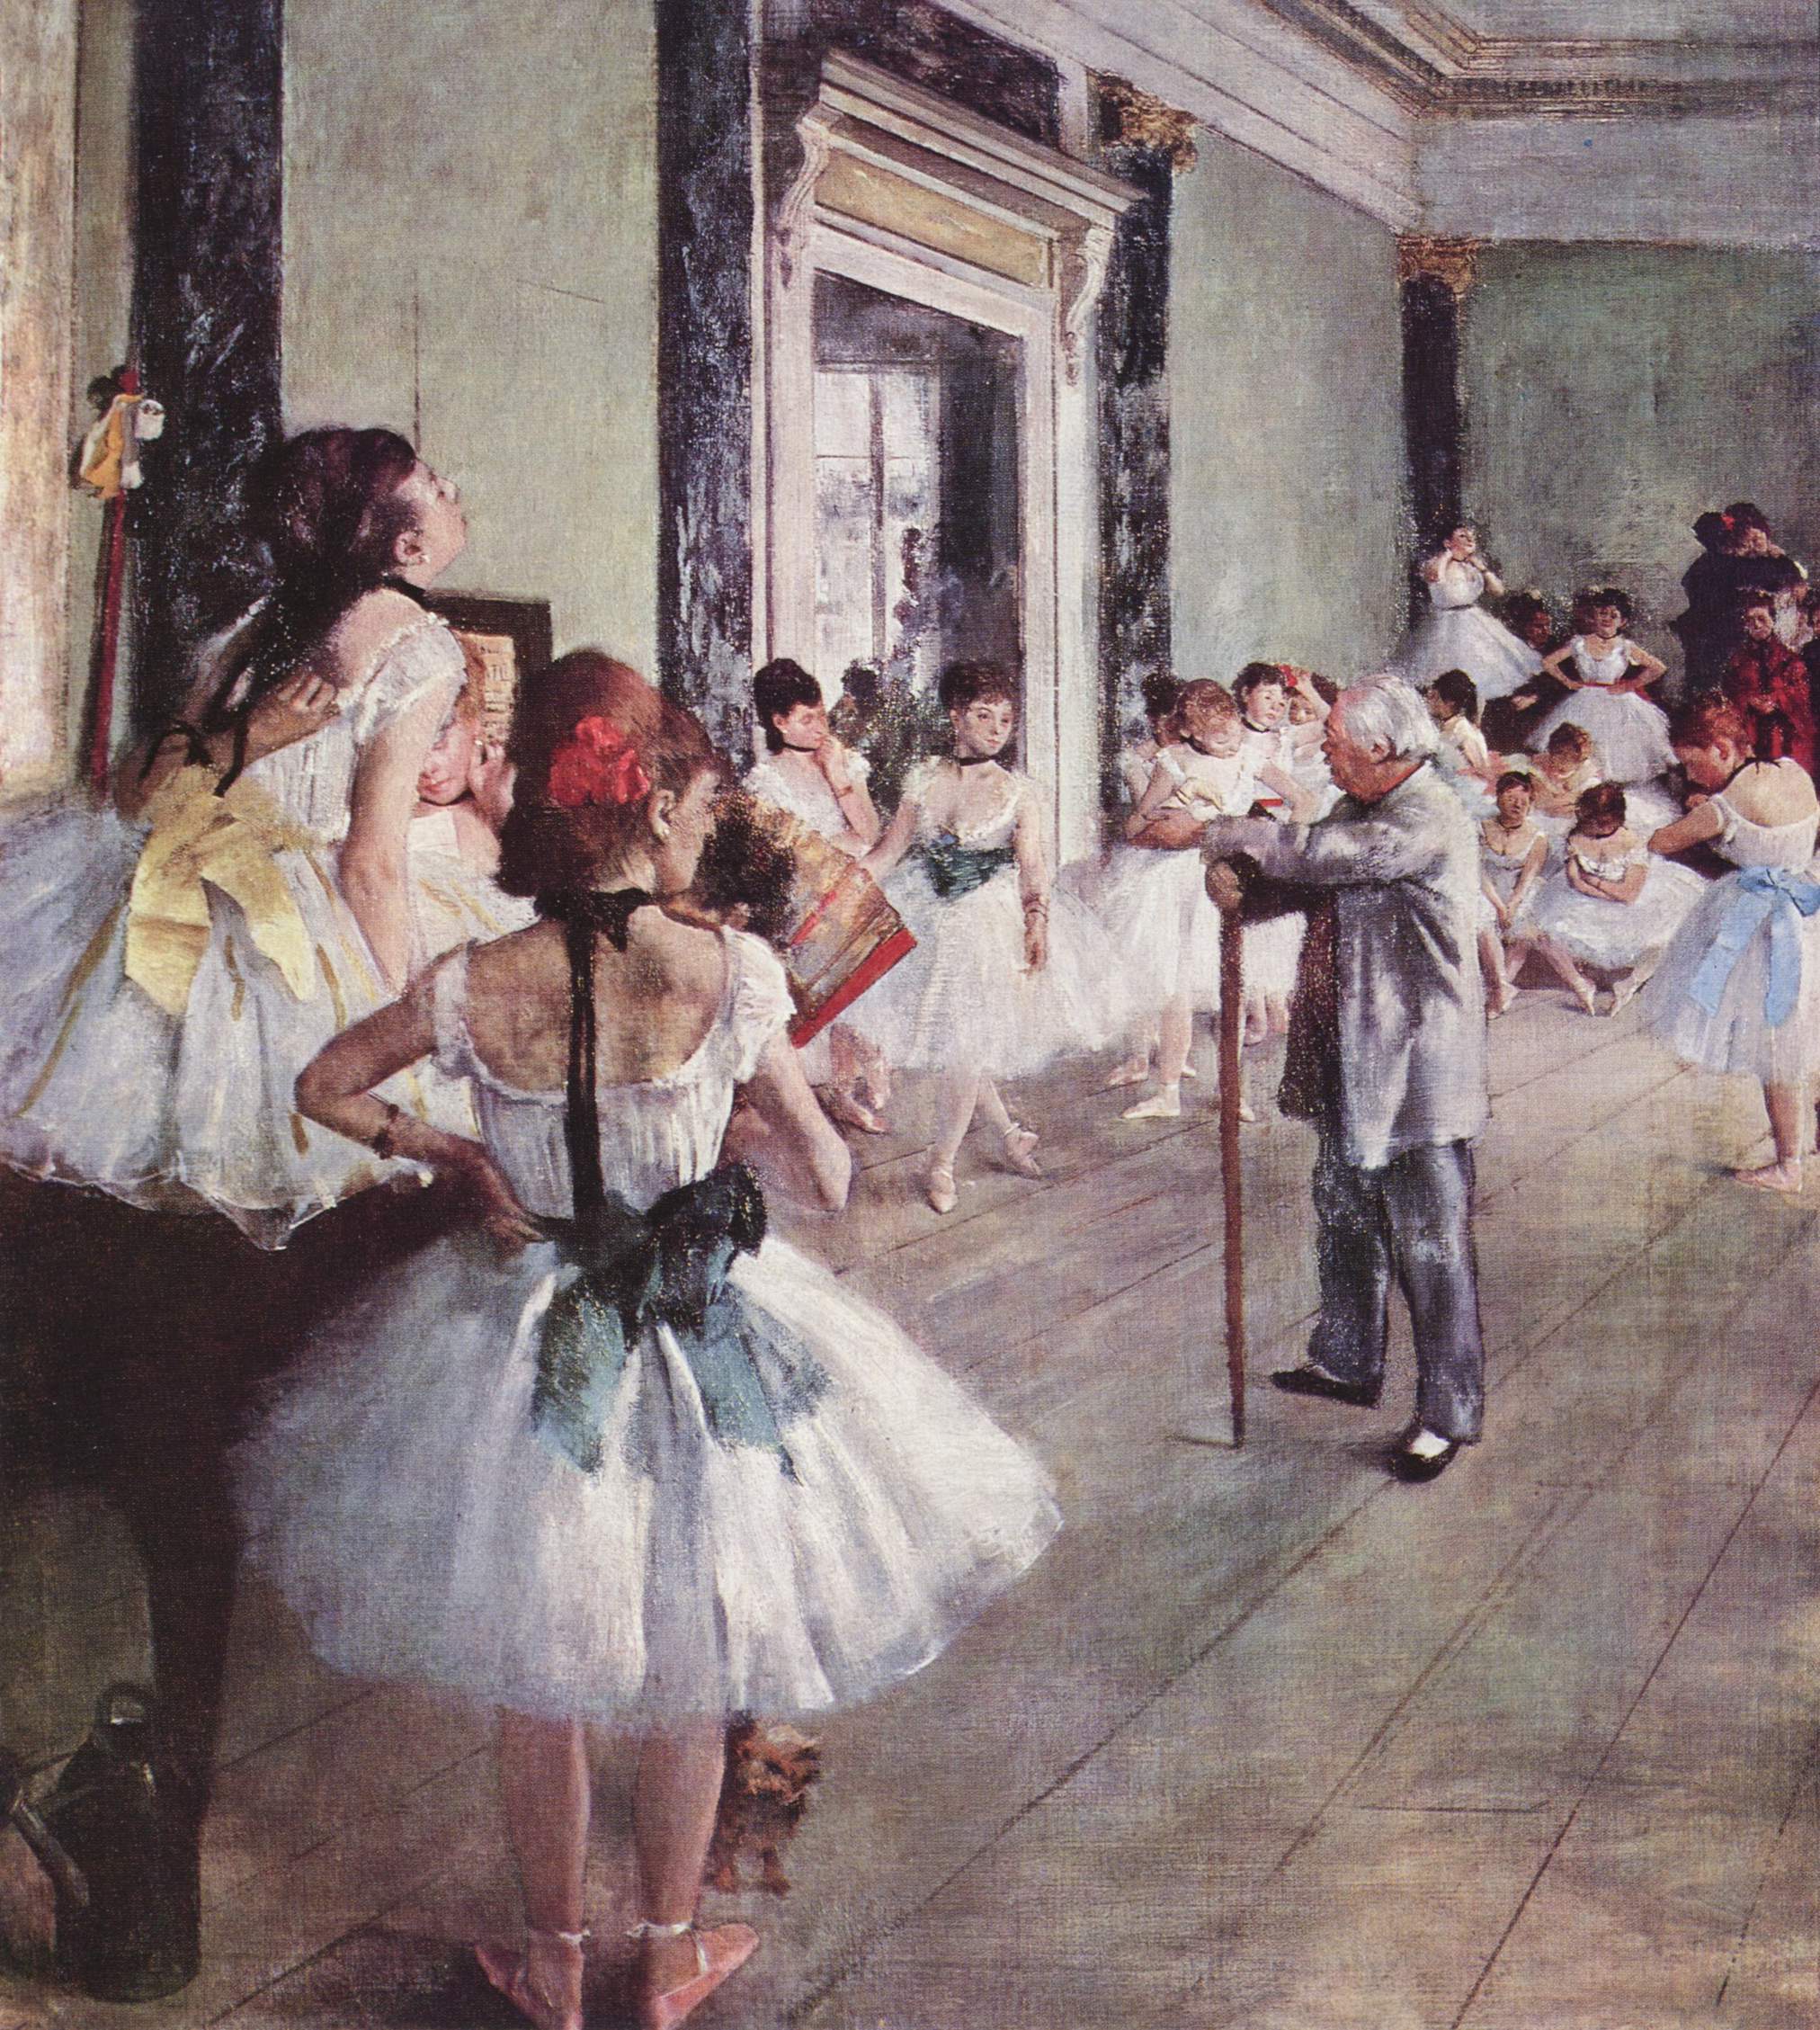 La Classe de danse by Edgar Degas - 1875 - 85 × 75 cm Musée d'Orsay